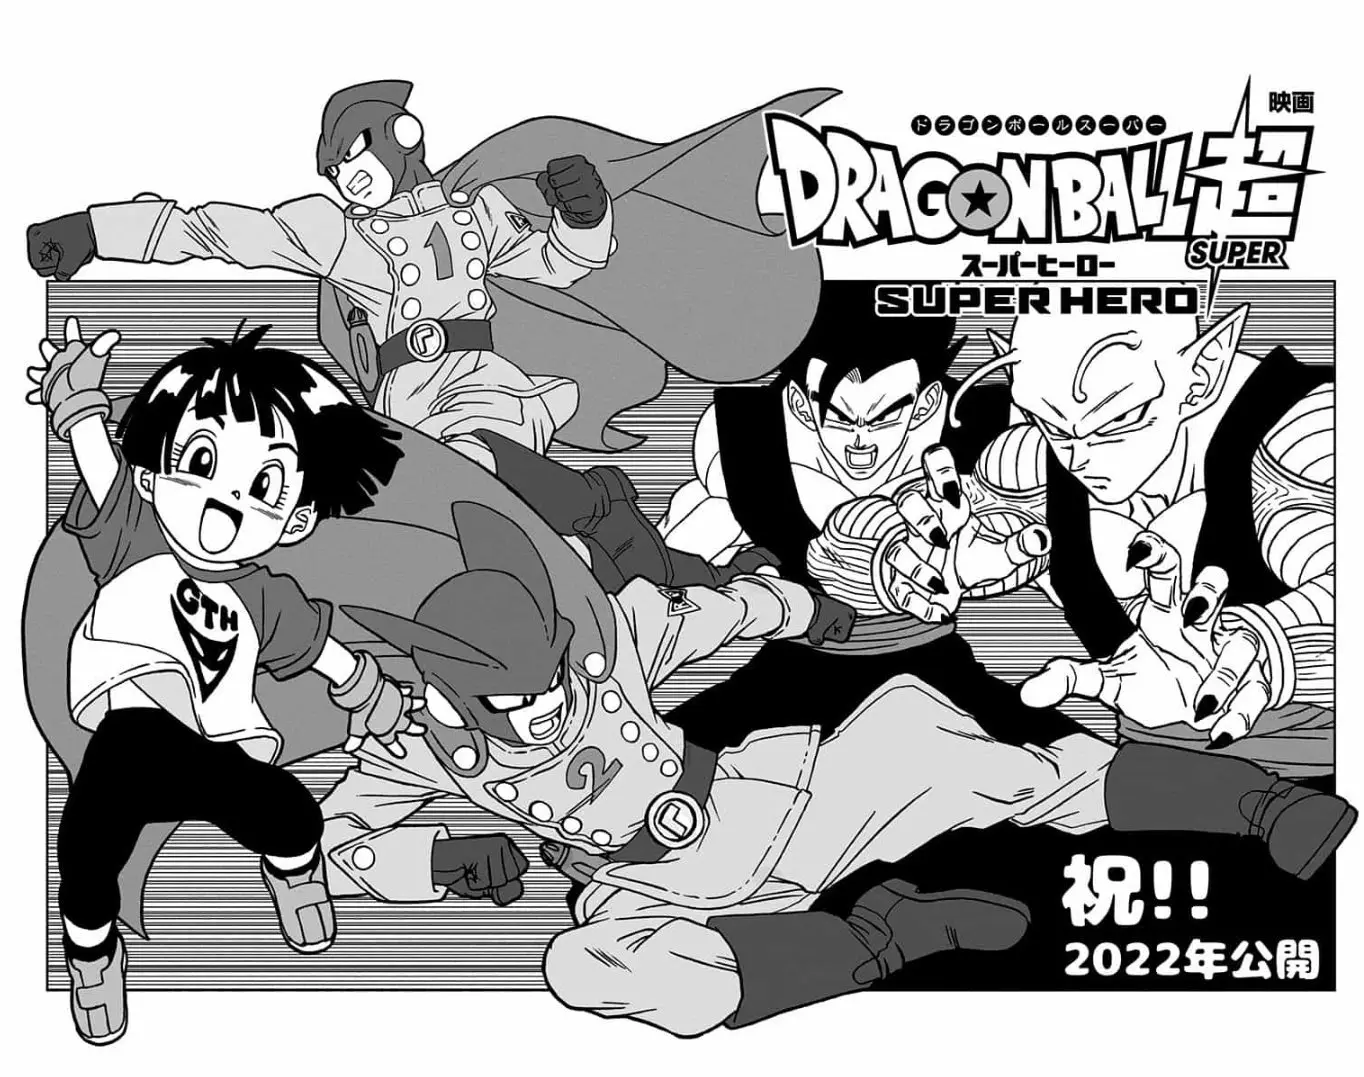 Dragon Ball Super: Ya disponible el capítulo 92 del manga gratis y